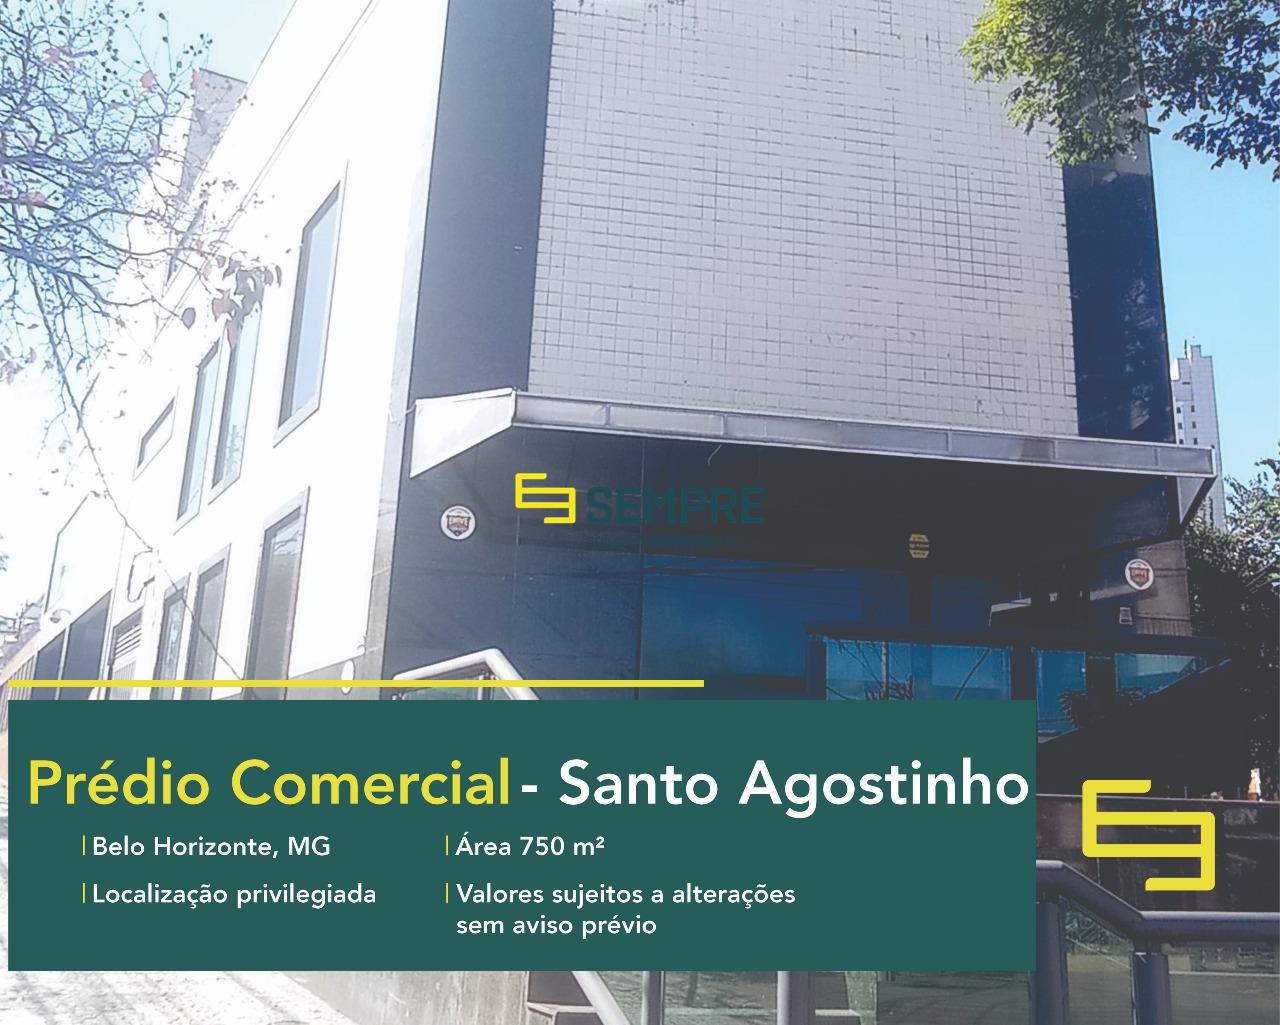 Prédio comercial para alugar no Santo Agostinho em Belo Horizonte. O estabelecimento comercial conta, sobretudo, com área de 750 m².